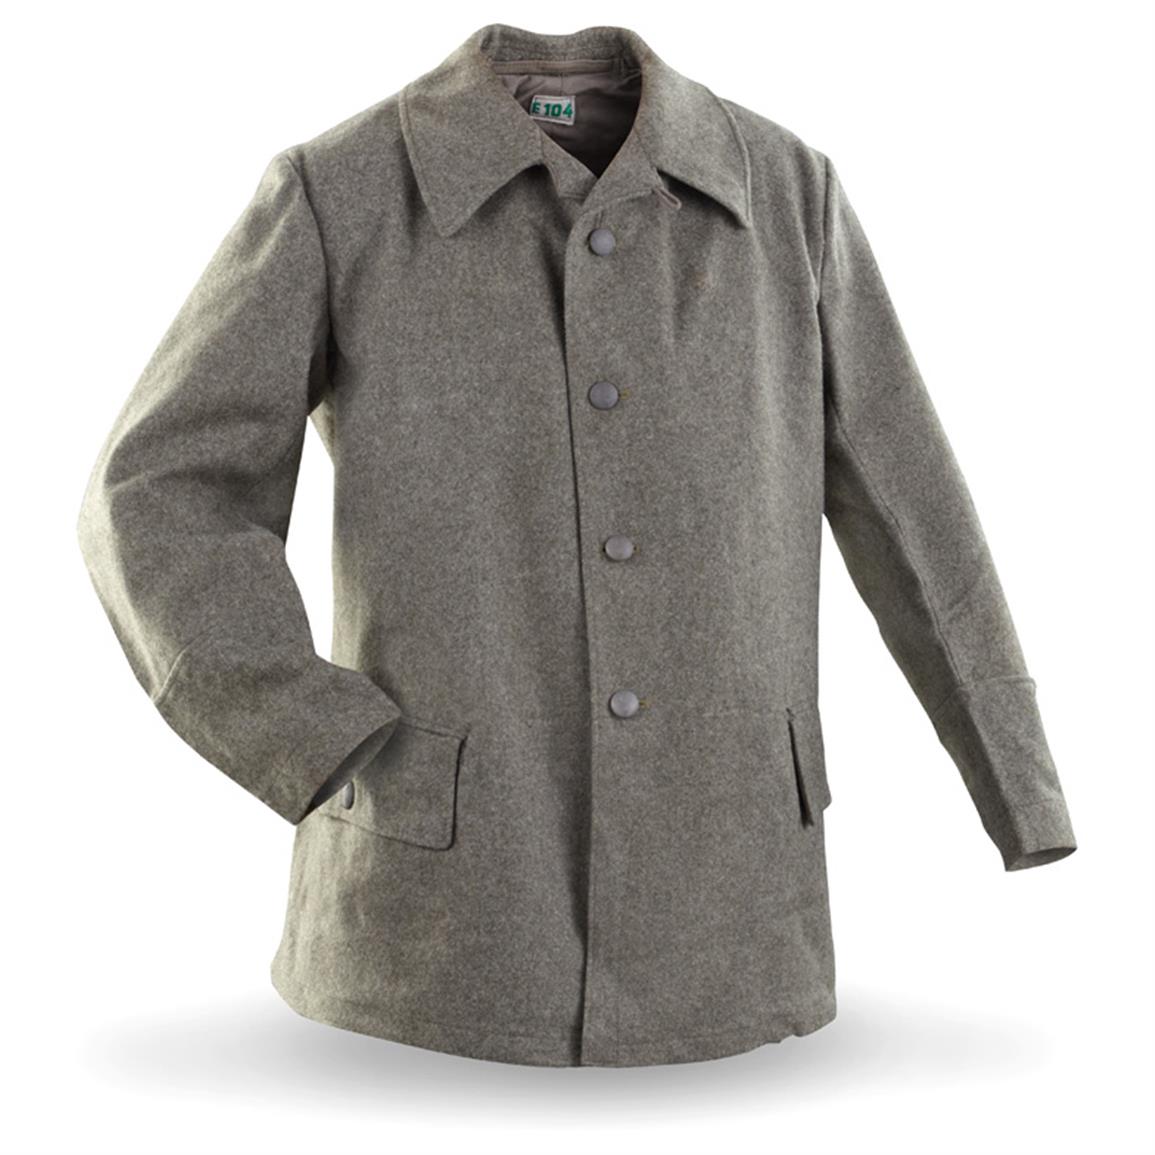 Military Wool Coats - Coat Nj